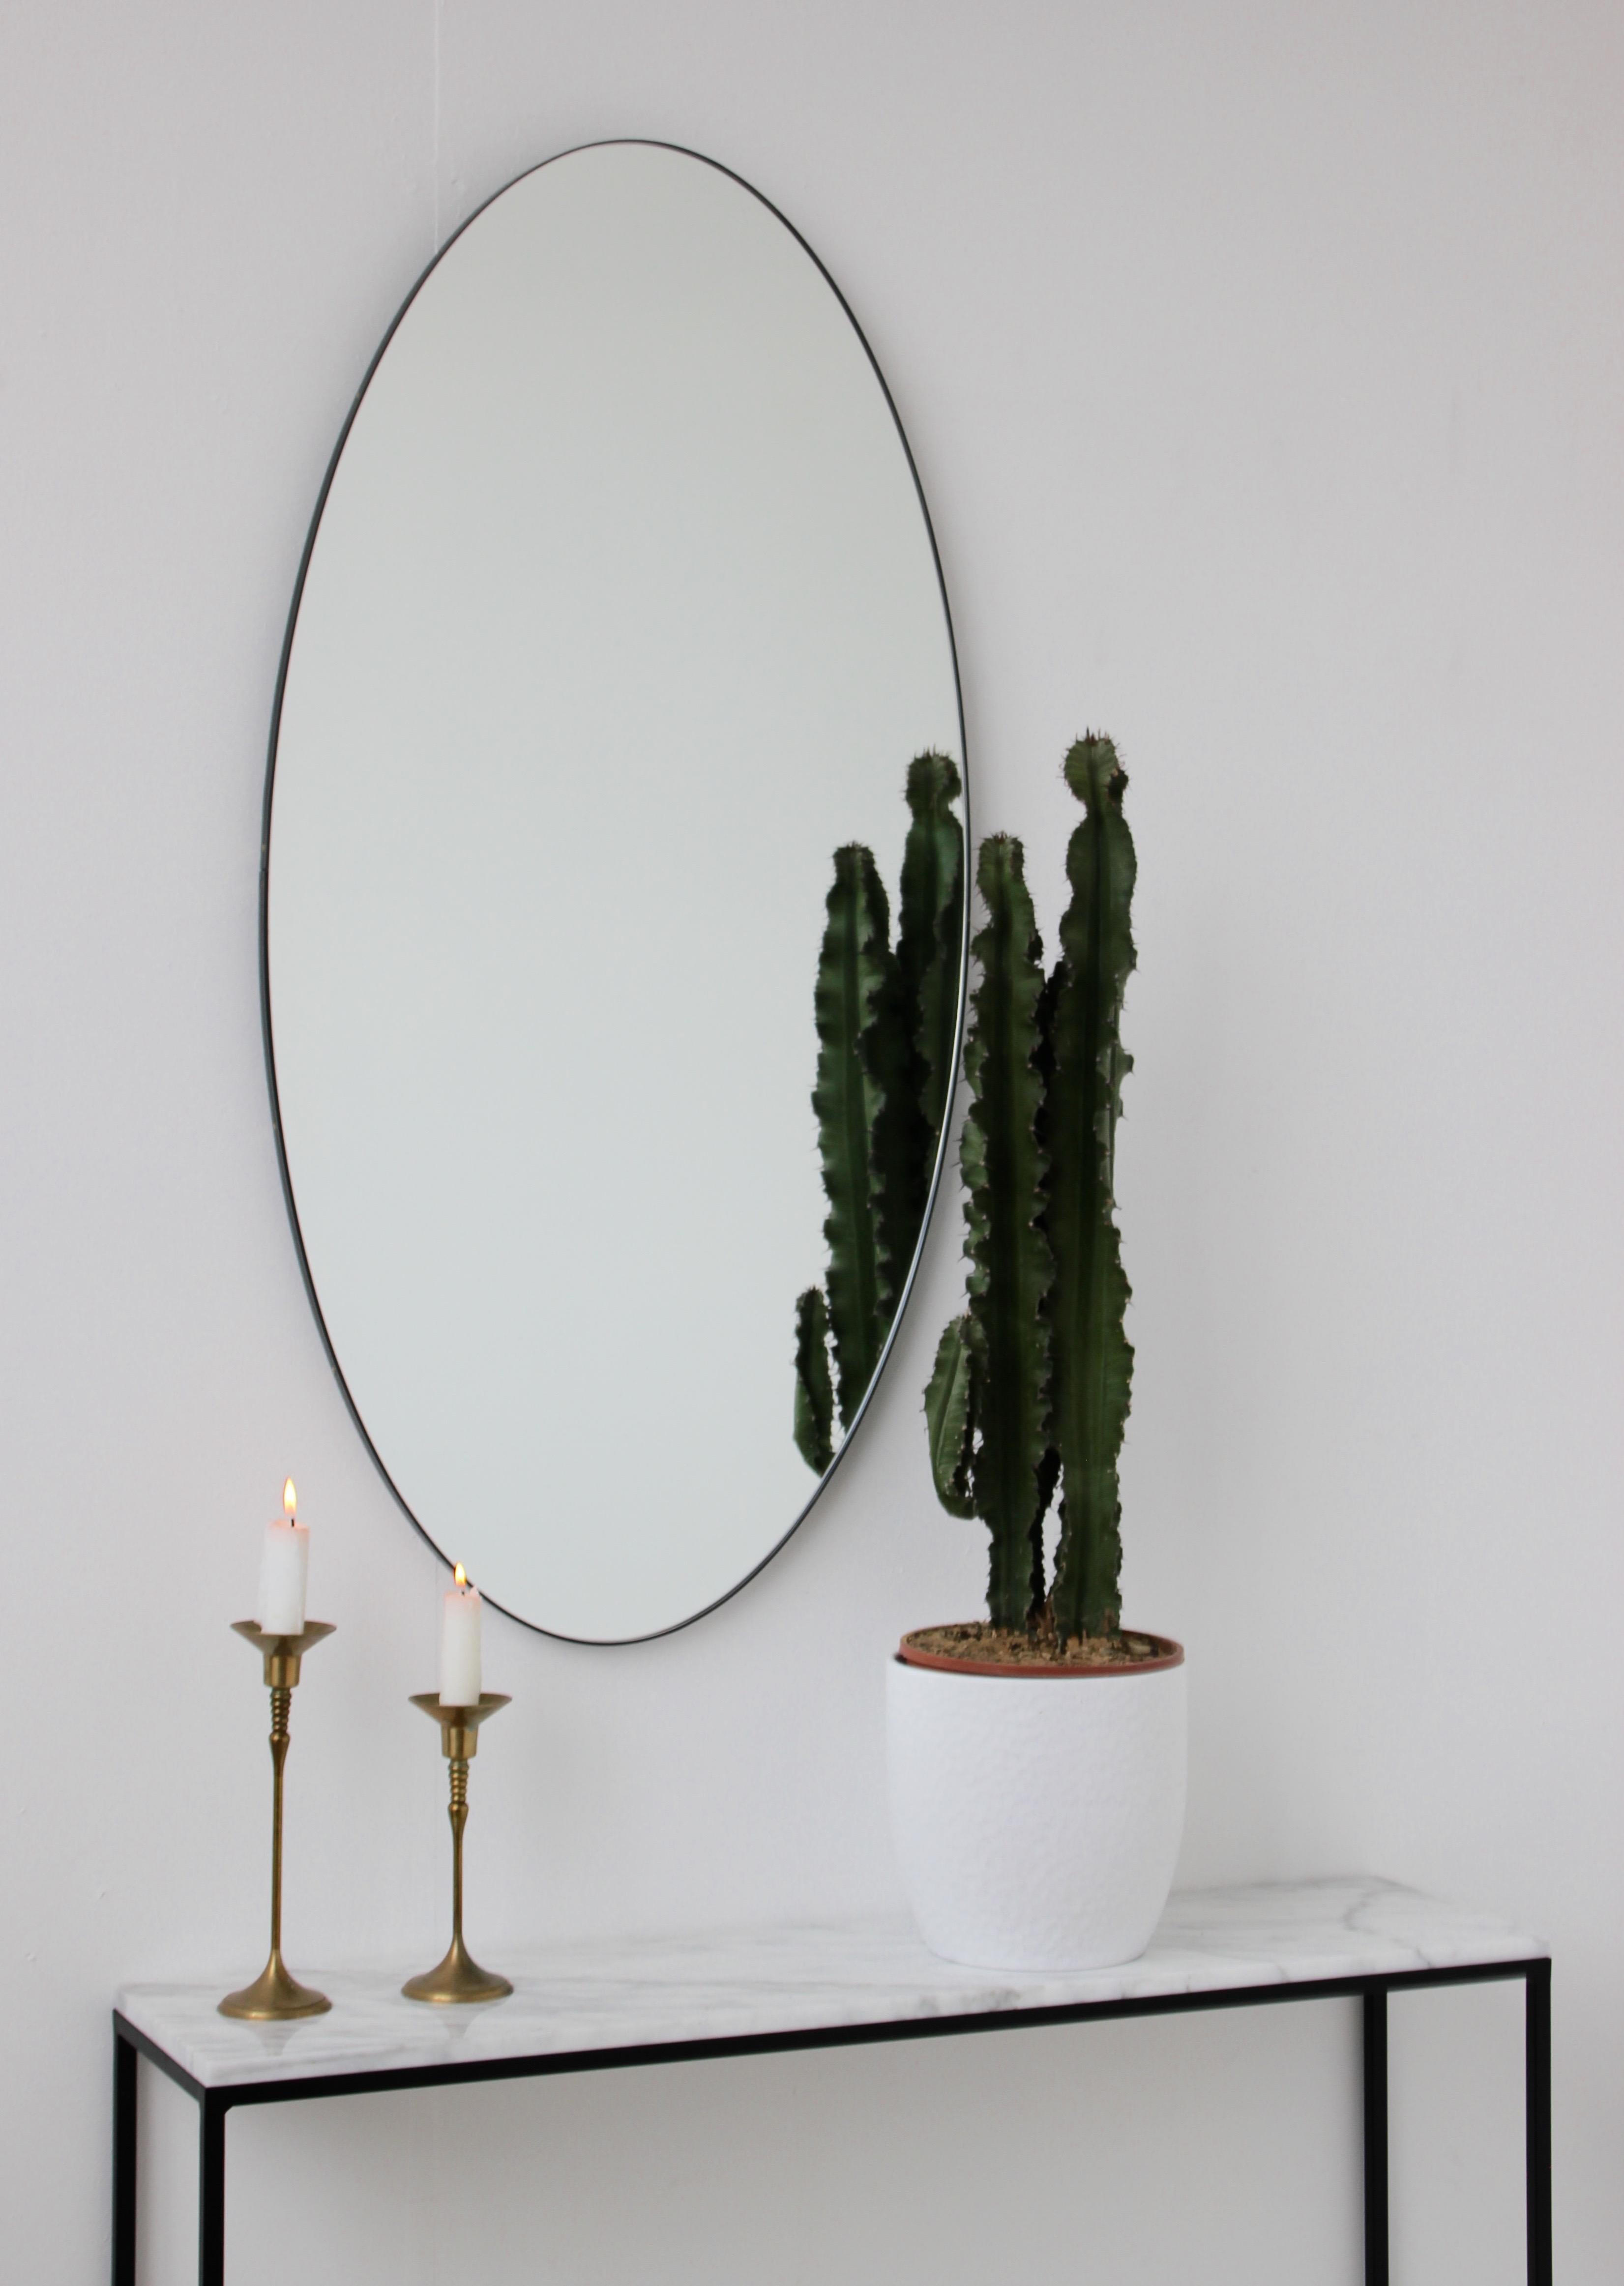 large white framed mirror